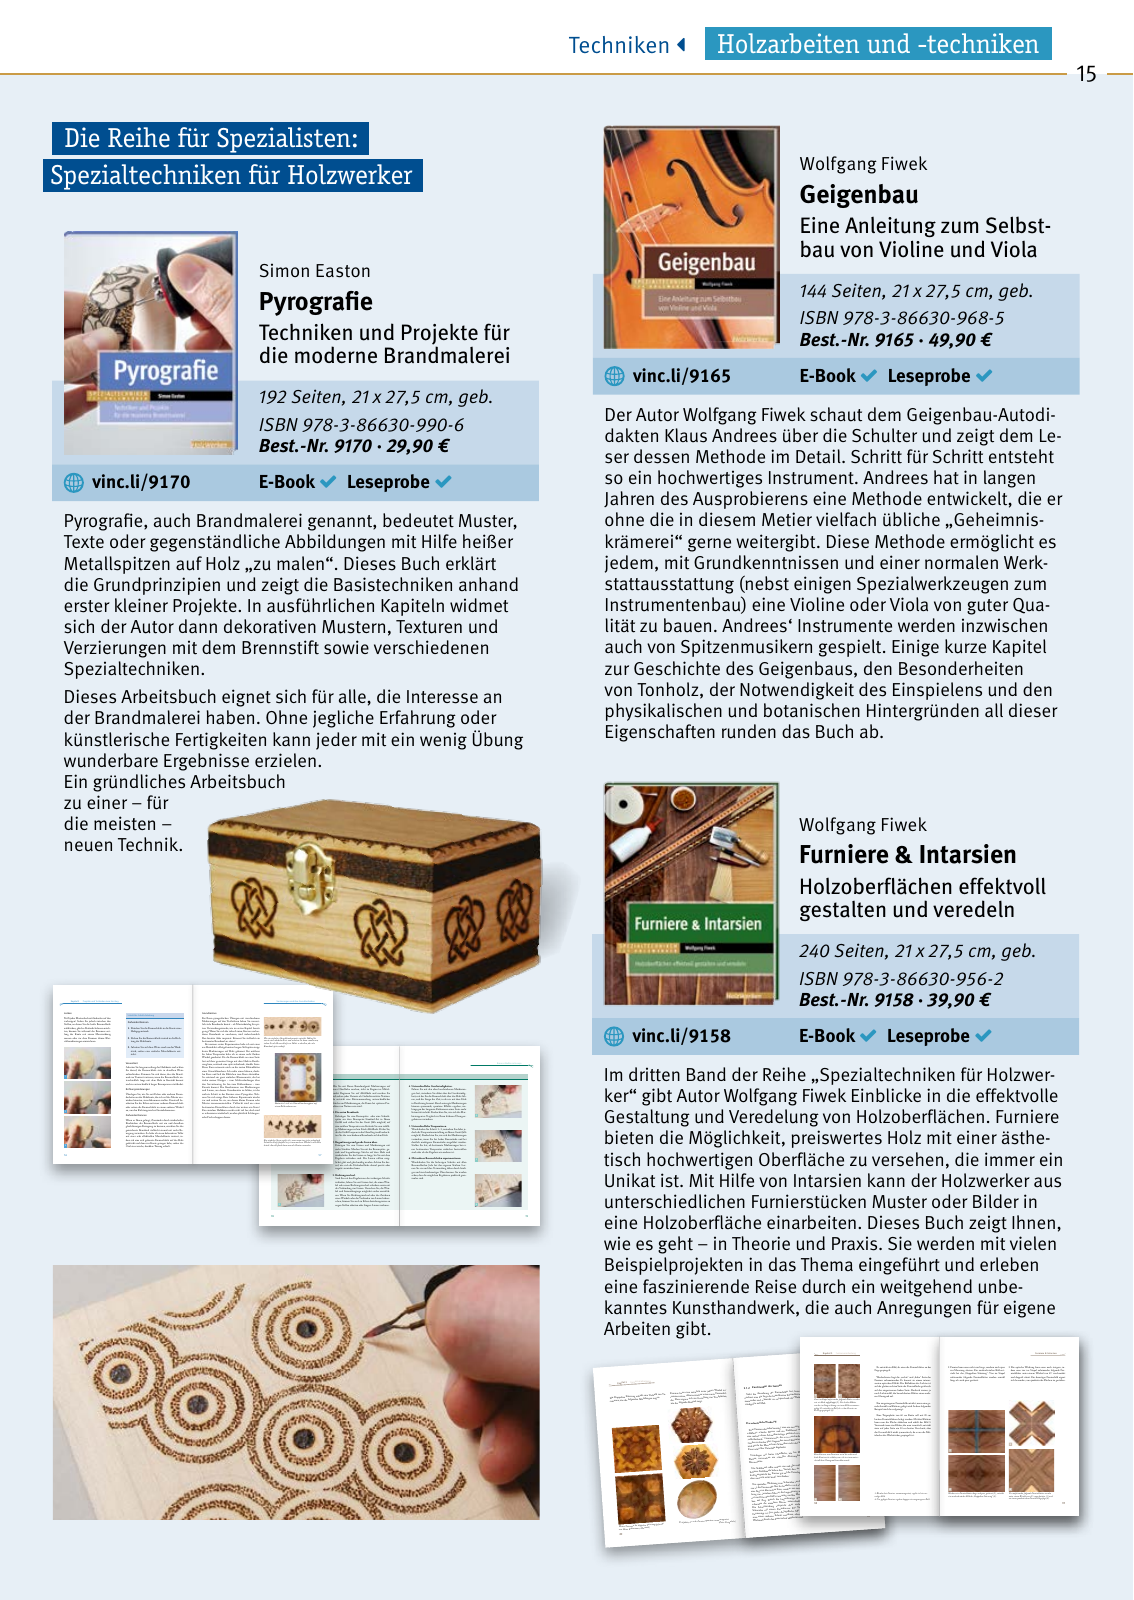 Vorschau HolzWerken Katalog 2020 Seite 15